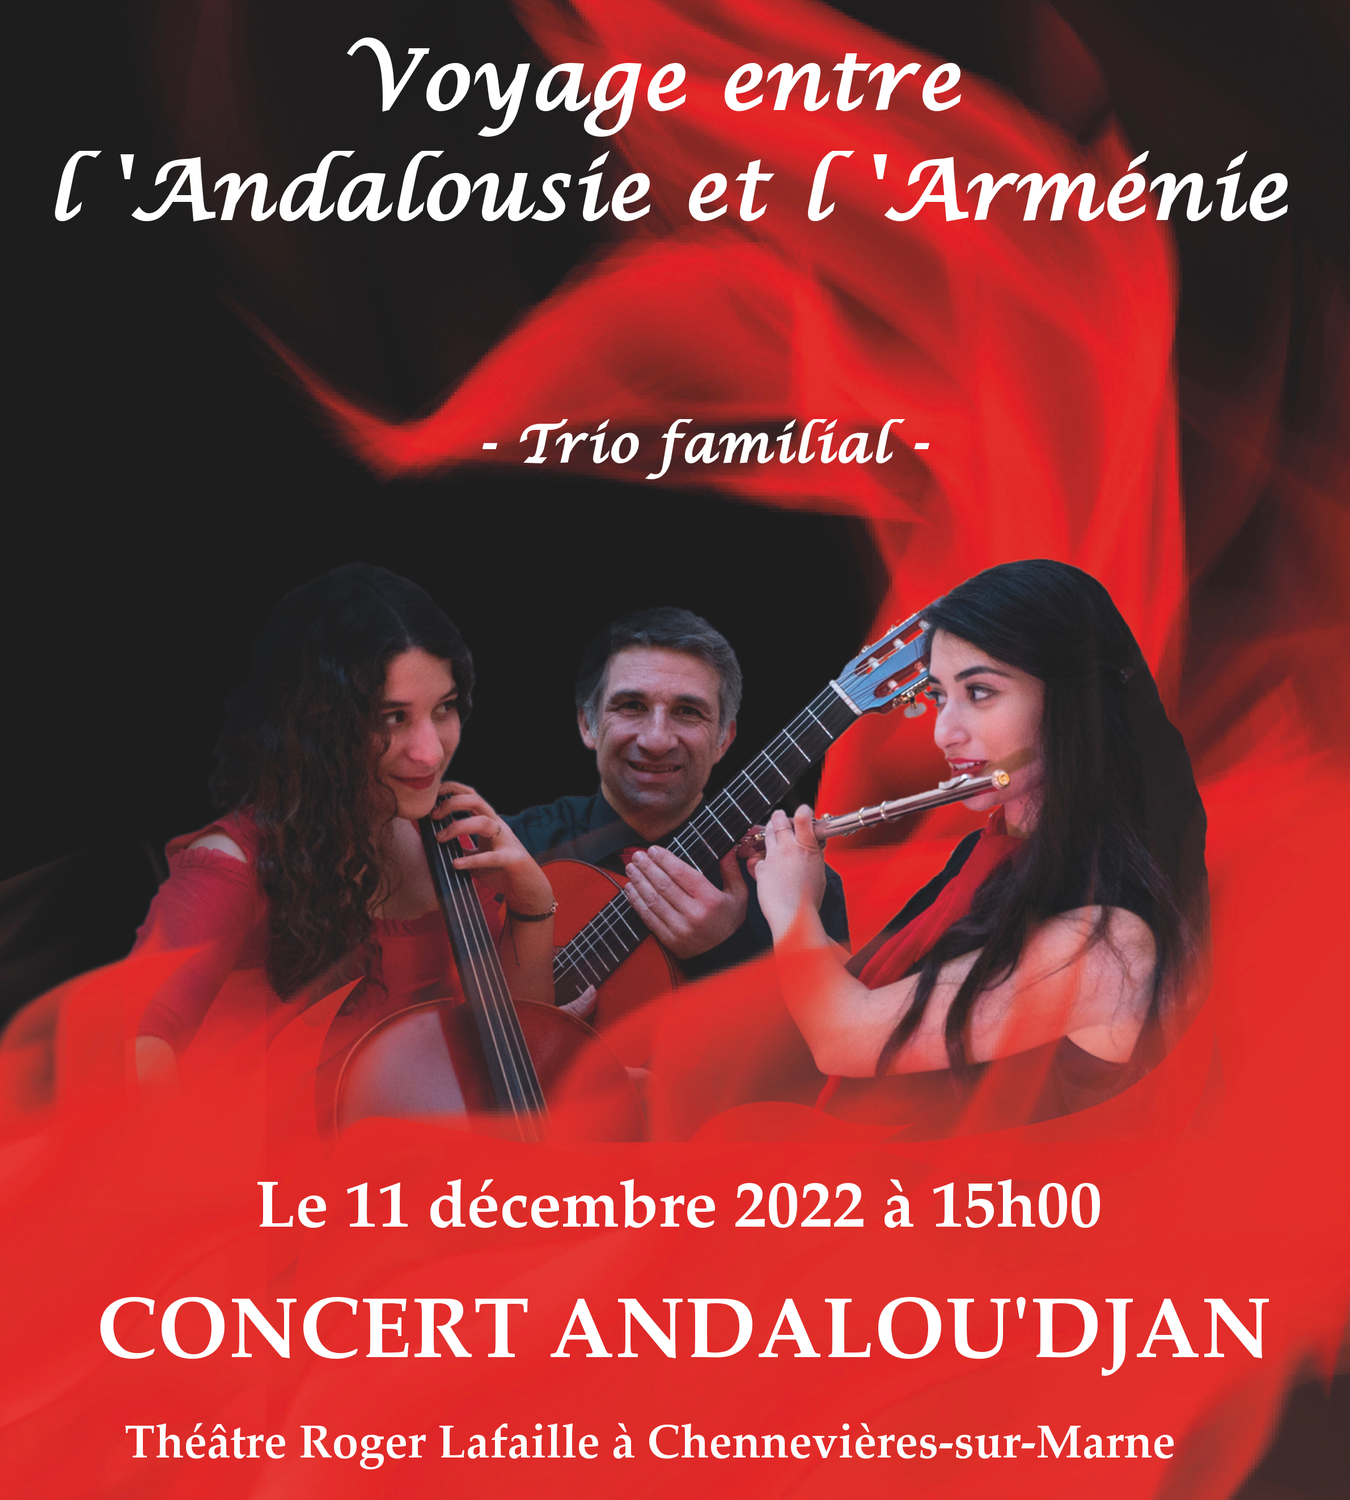 Concert Andalou'djan -Théâtre Roger Lafaille - Chennevières-Sur-Marne (94)